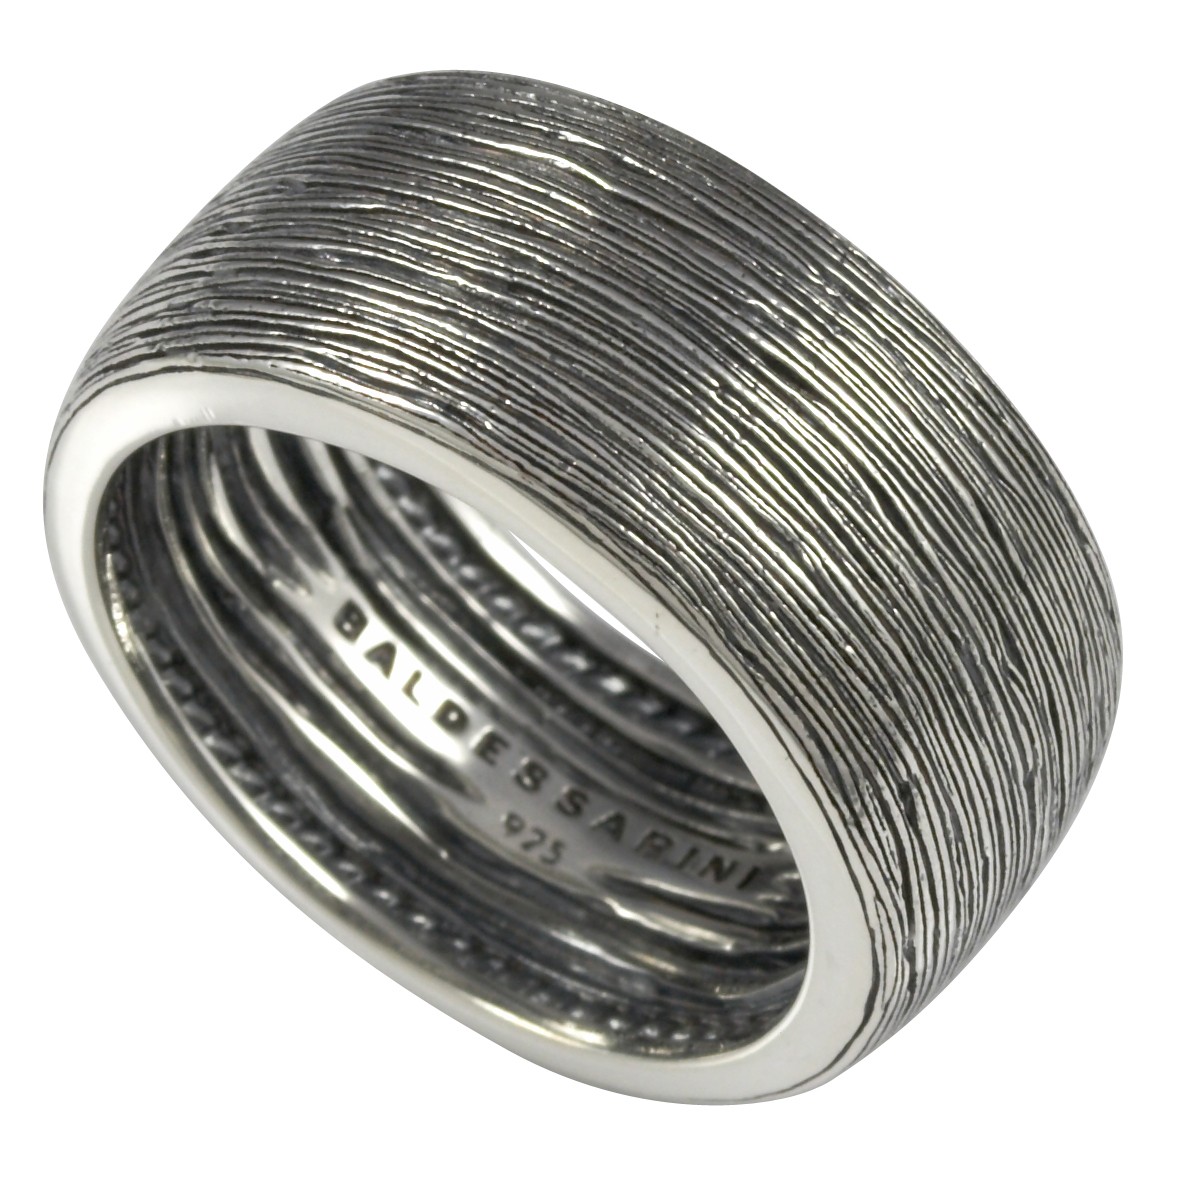 Herren-Ring/Siegel-Ring mit geschwärztem Muster von Baldessarini  Y1072R/90/00